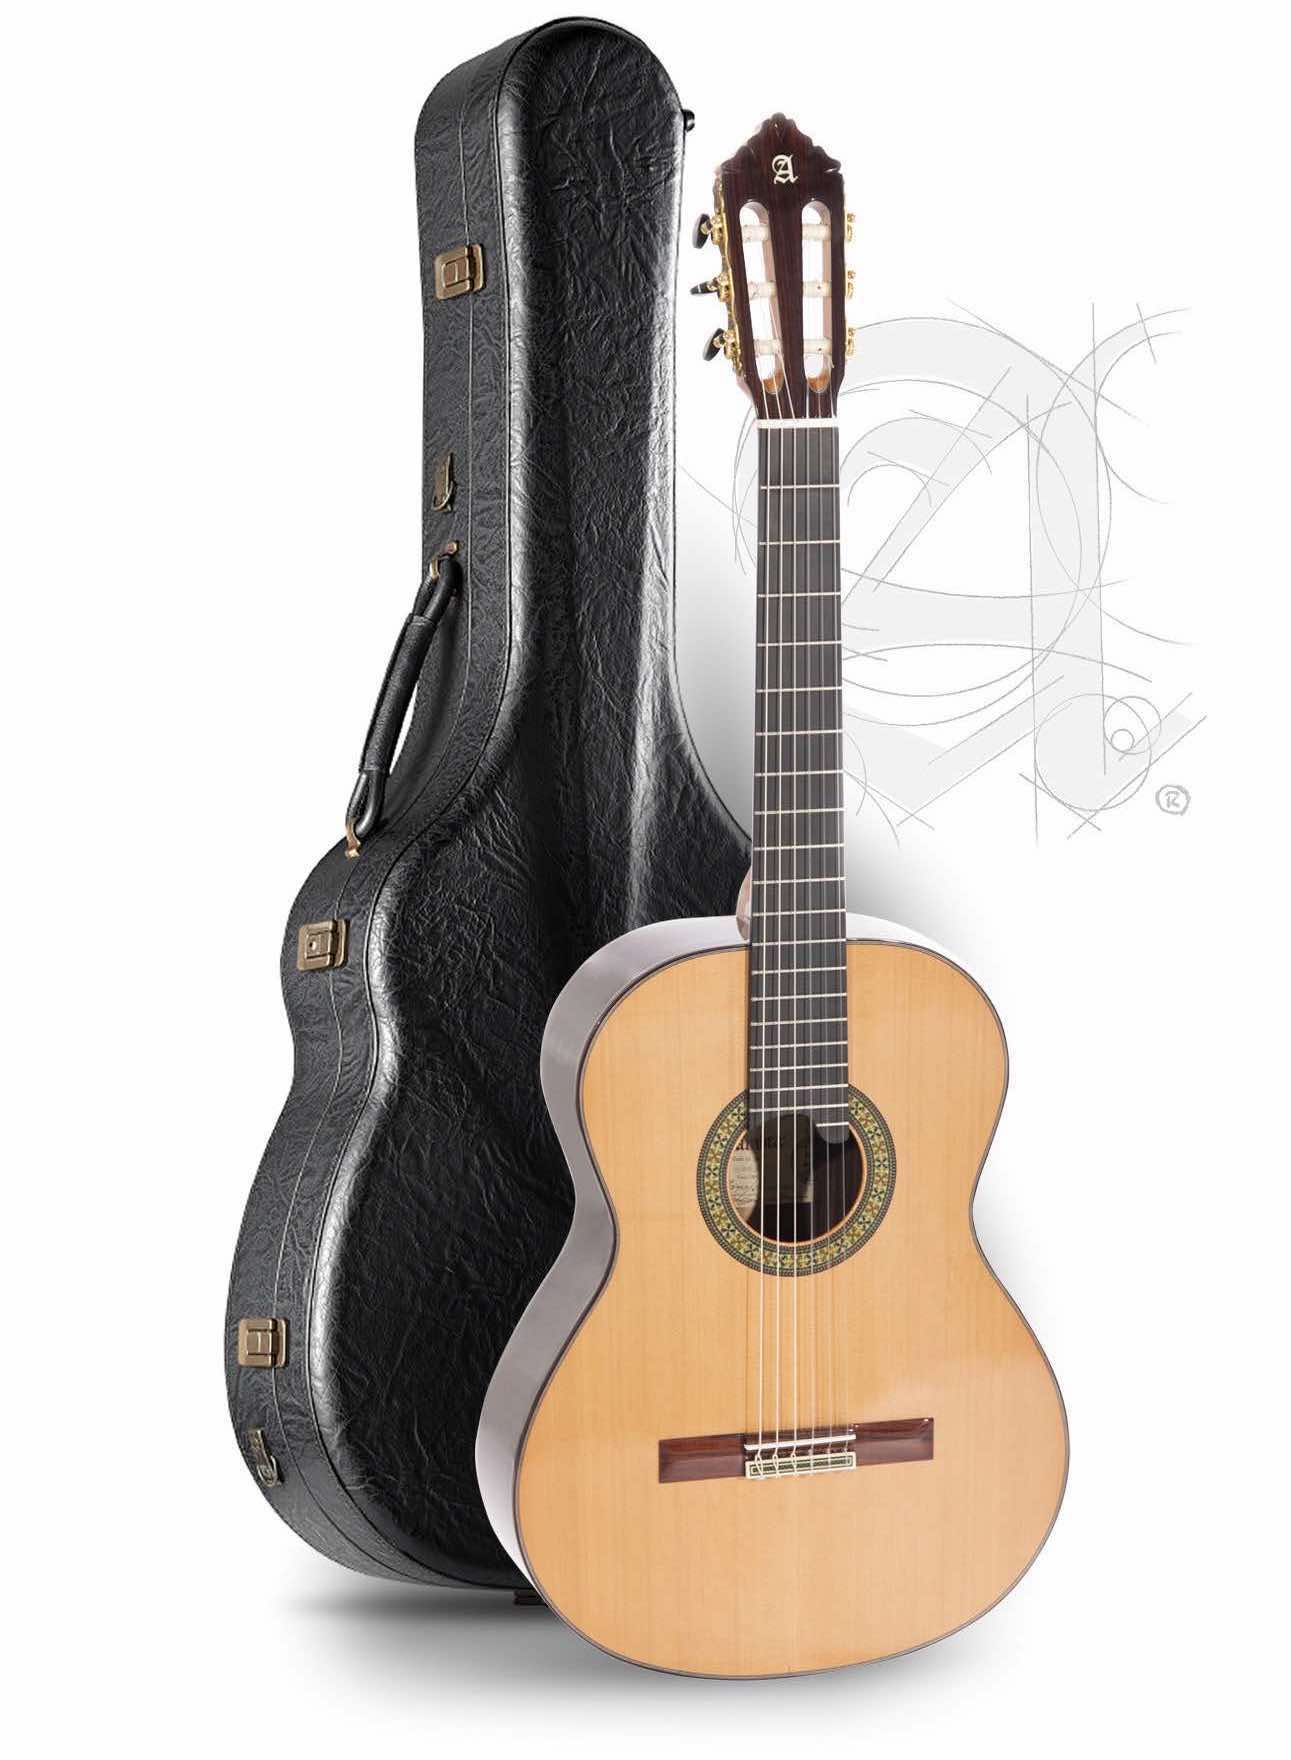 Guitarras Alhambra, el surtido más amplio de guitarras Alhambra y al mejor precio, solo en Drunkat